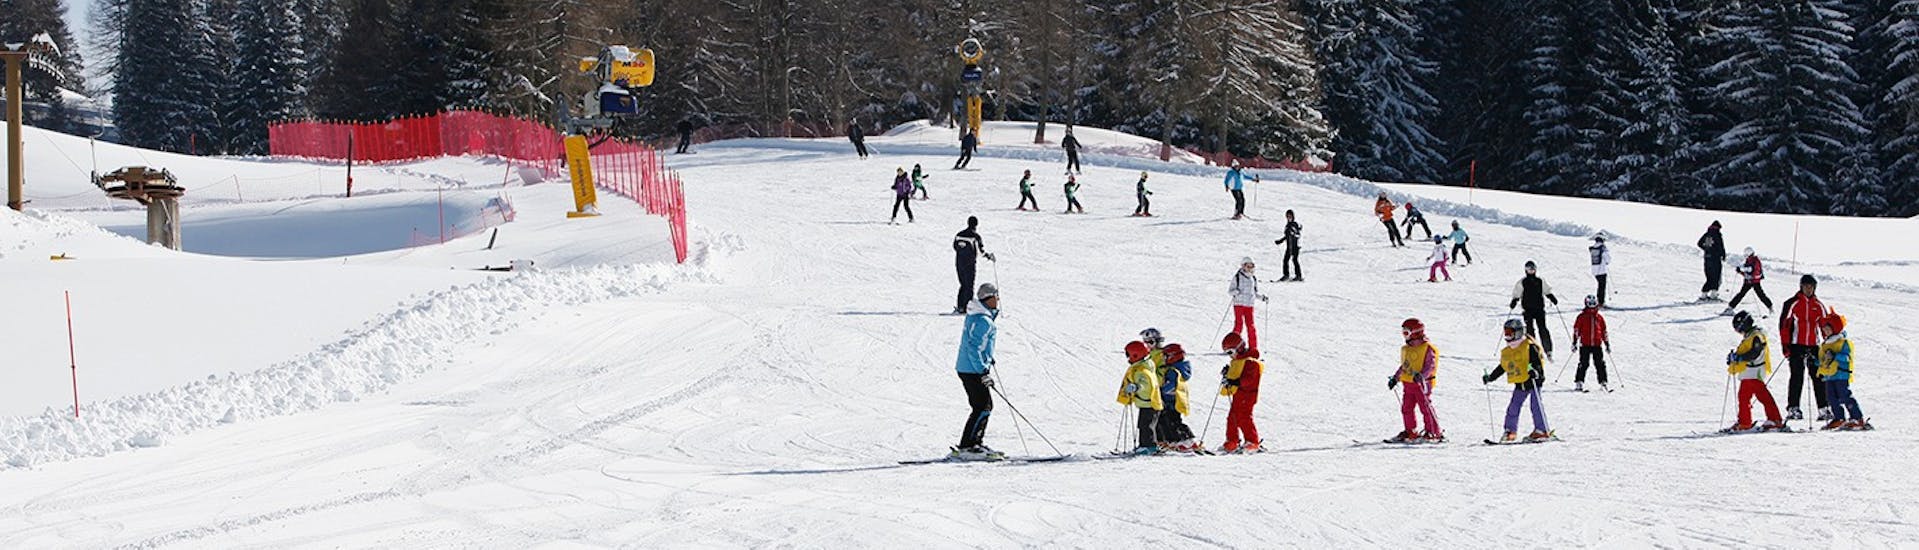 Pistes waar de Kids Ski Lessen (6-14 j.) voor ervaren skiërs - Hele dag met Scuola Italiana Sci Folgaria-Fondo Grande plaatsvinden.